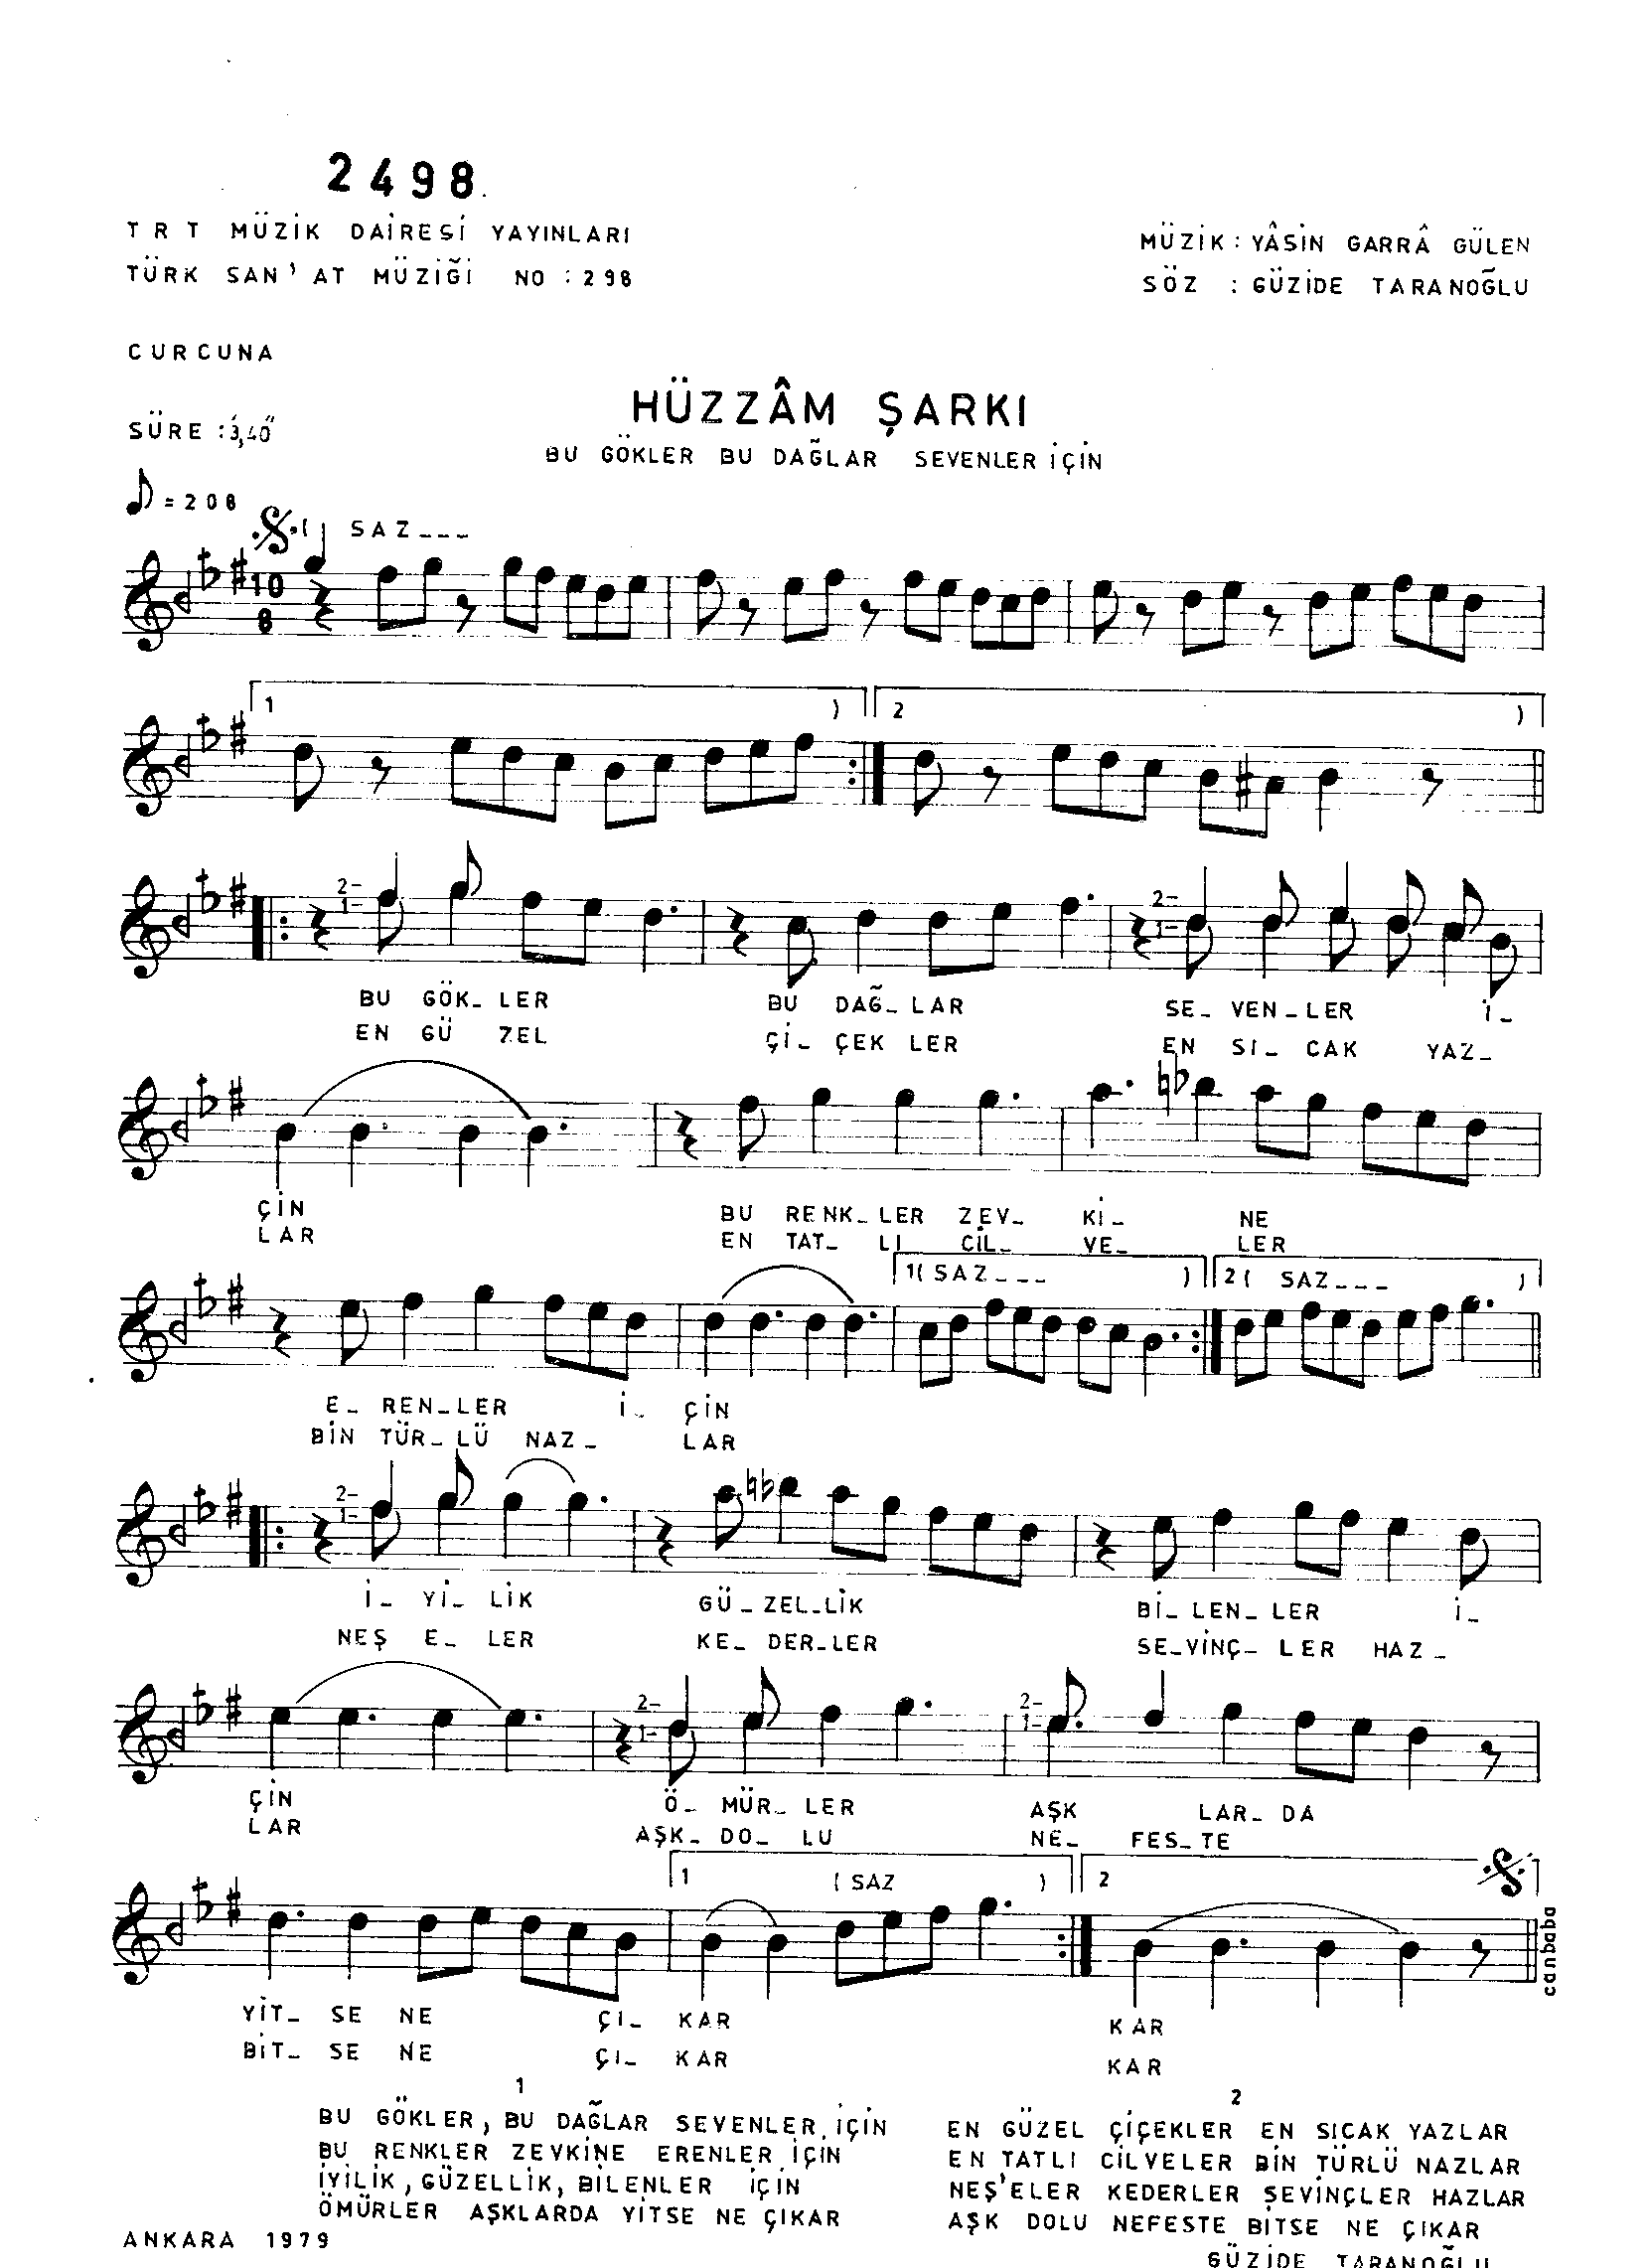 Hüzzâm - Şarkı - Yâsin Garra Gülen - Sayfa 1